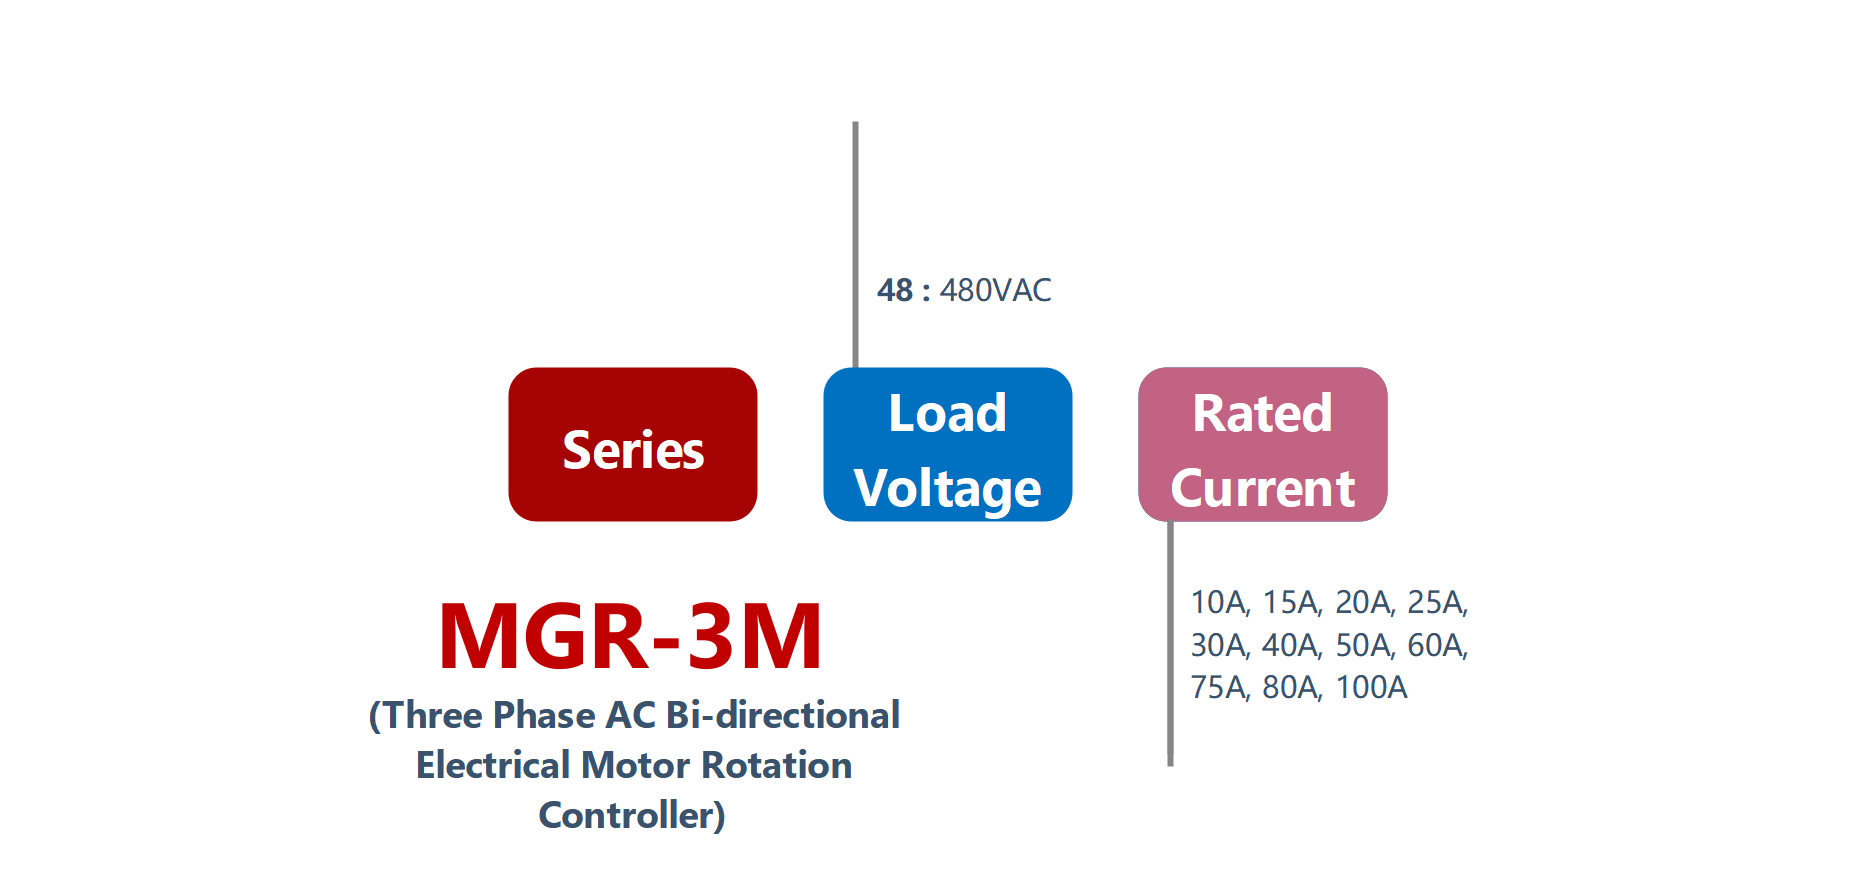 如何订购MGR-3M系列电气电机控制器